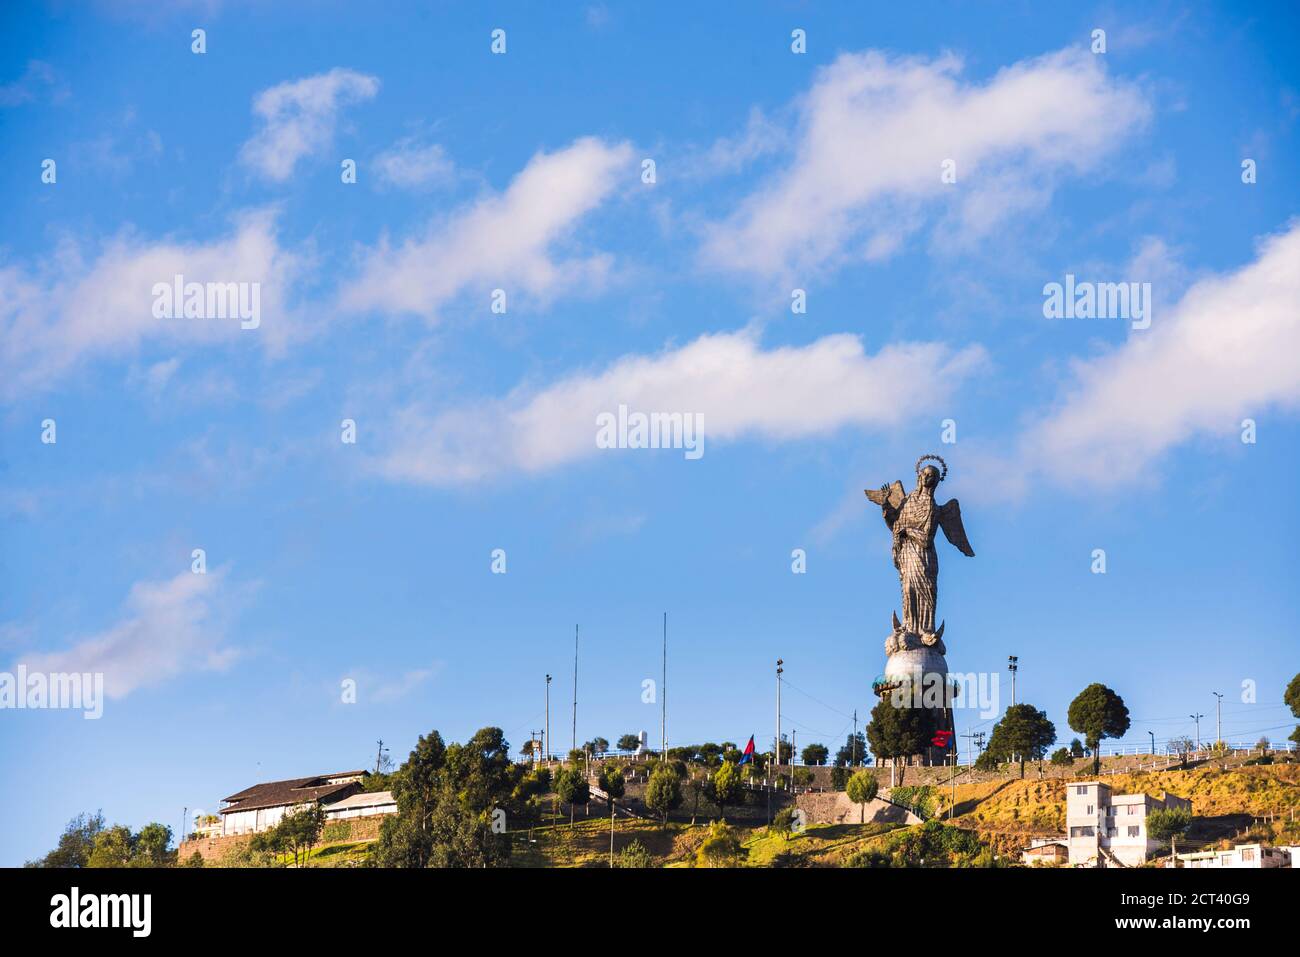 Statue de la Vierge de Quito (Virgen de Quito), statue d'El Panecillo Hill, ville de Quito, Équateur, Amérique du Sud Banque D'Images